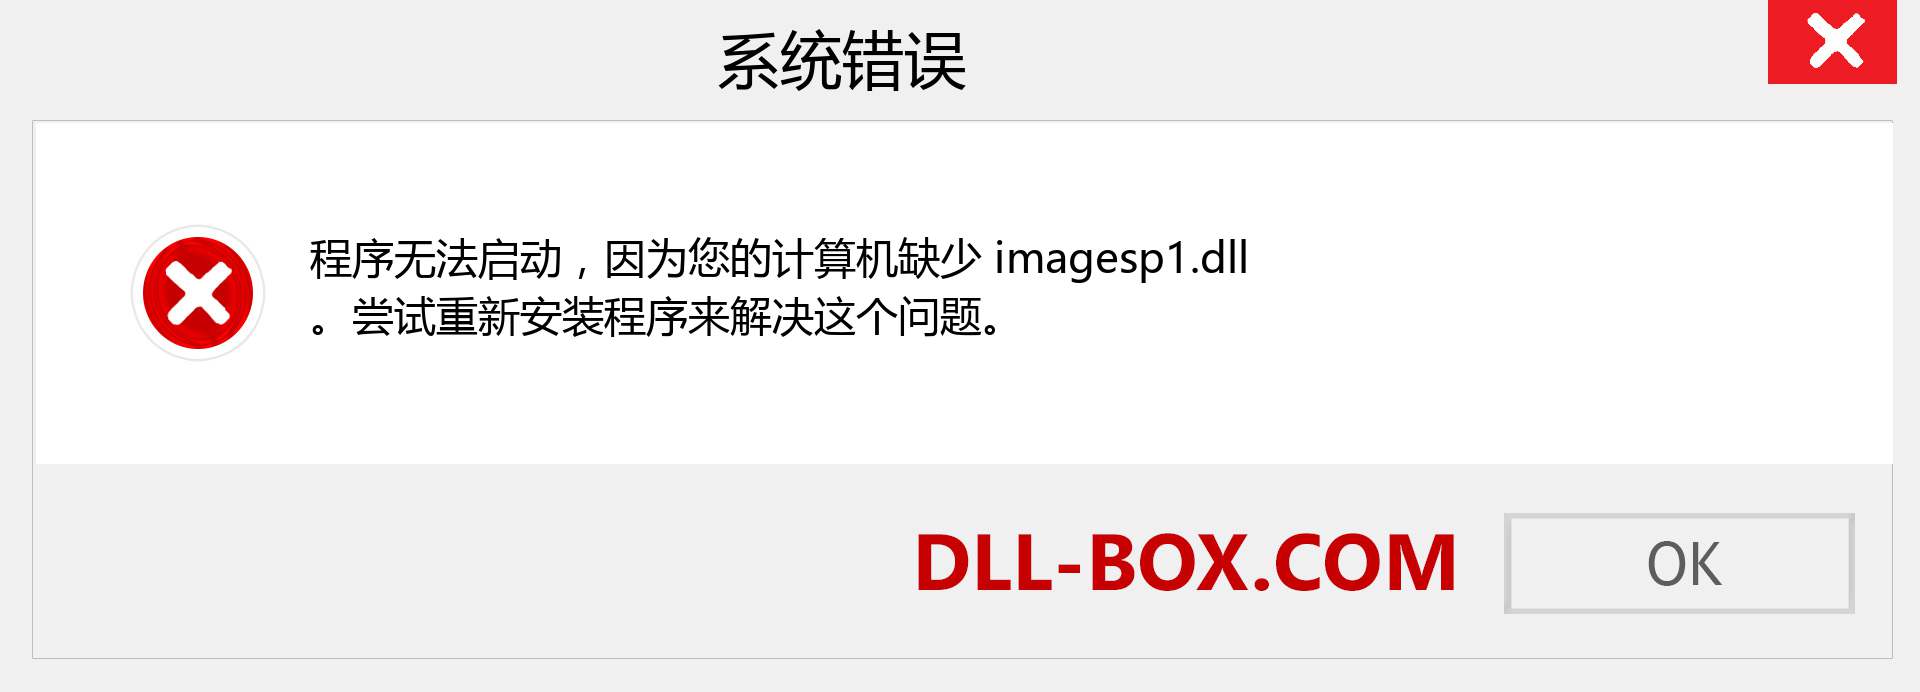 imagesp1.dll 文件丢失？。 适用于 Windows 7、8、10 的下载 - 修复 Windows、照片、图像上的 imagesp1 dll 丢失错误